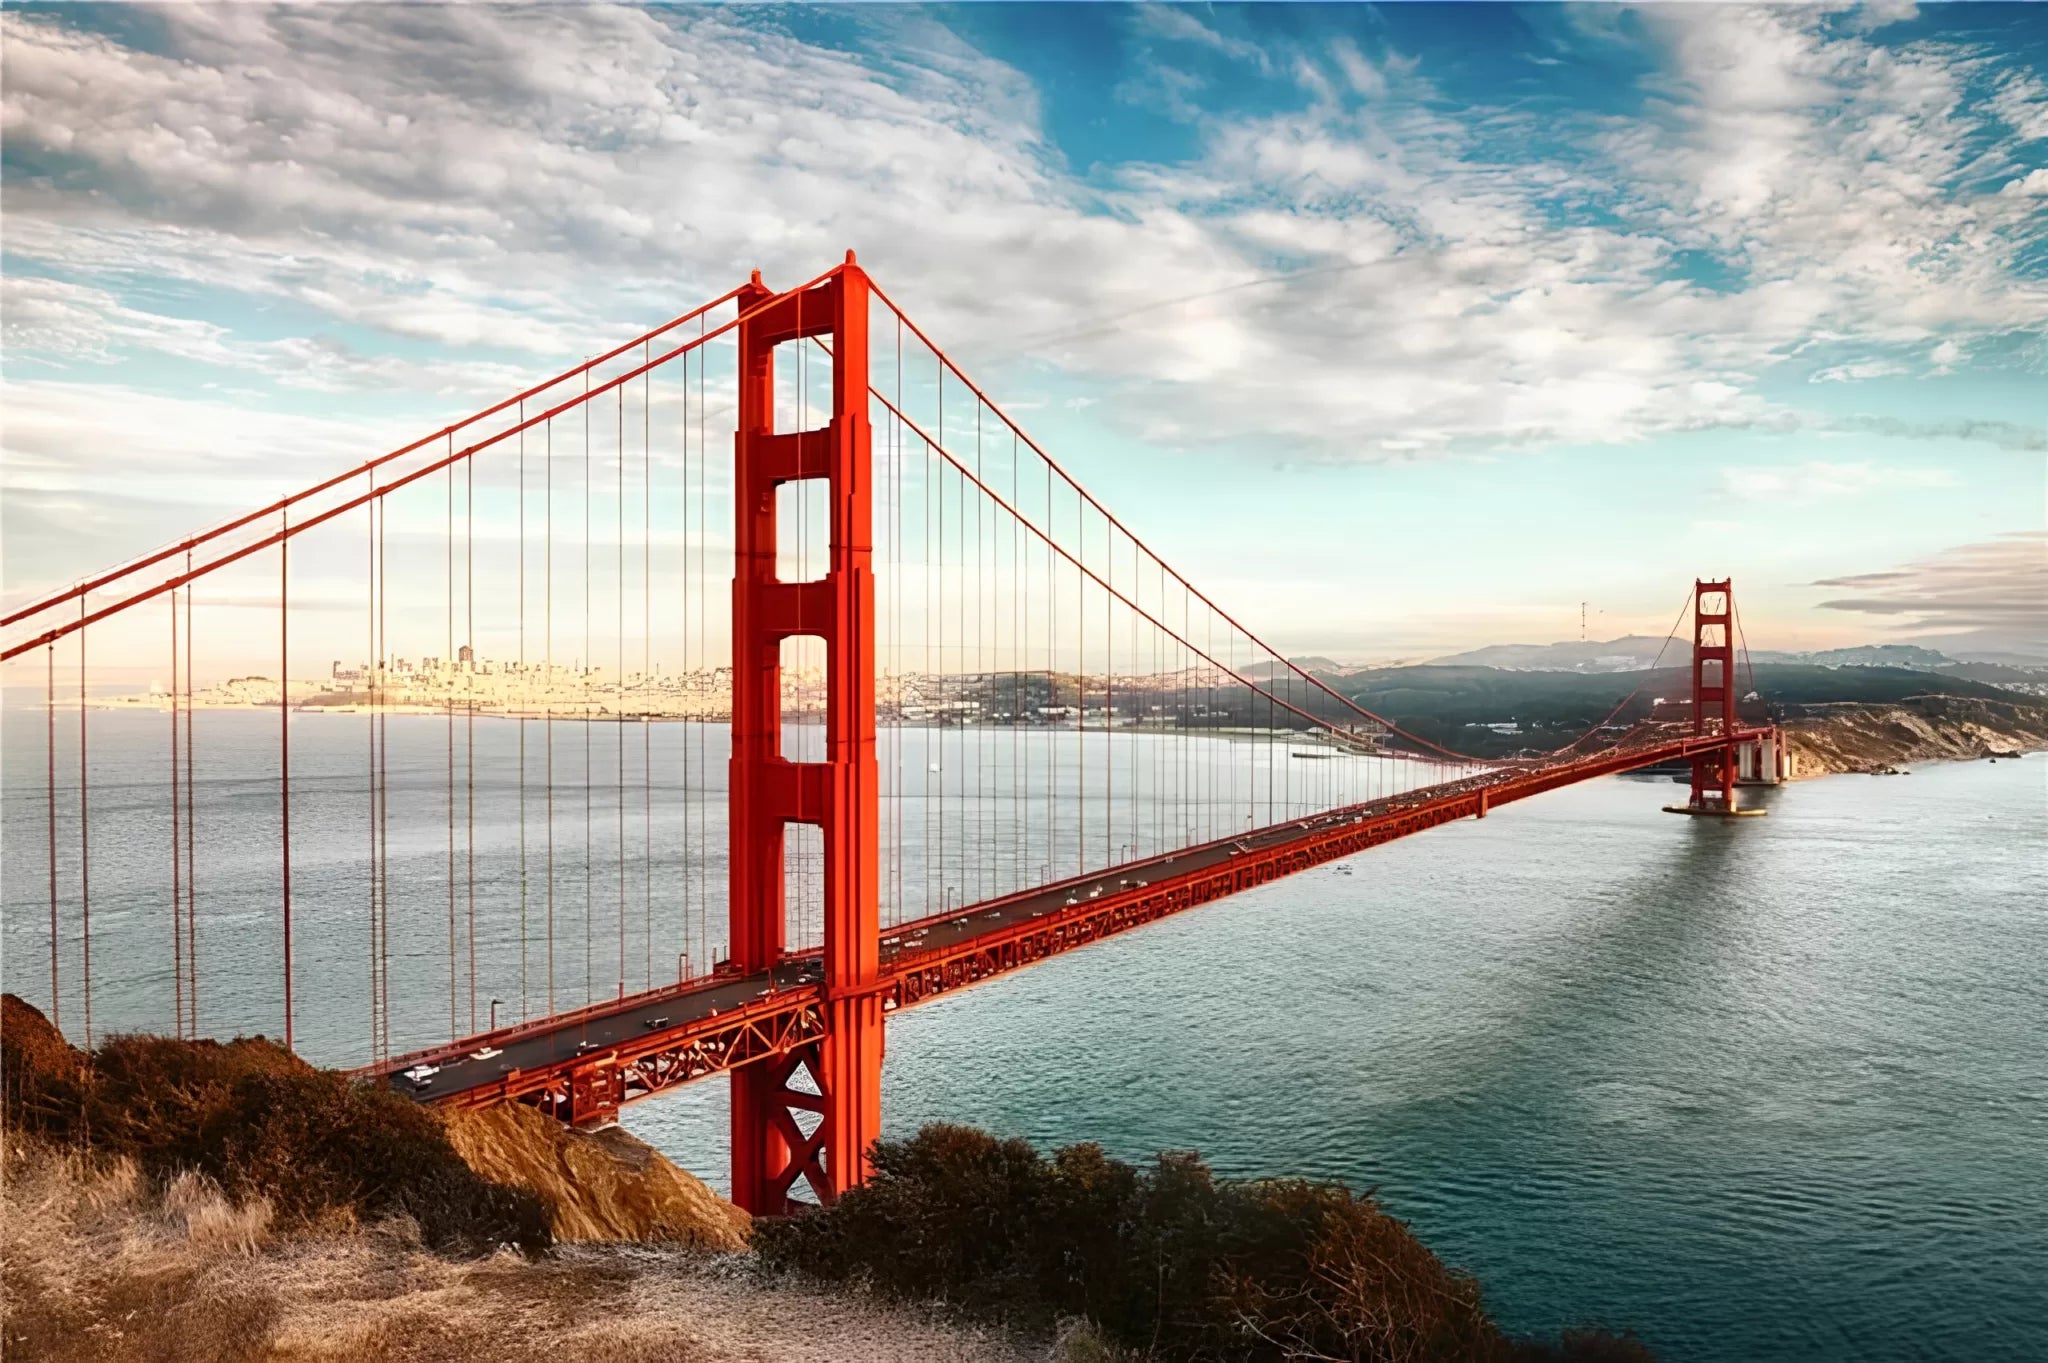 Papier peint panoramique pont San Francisco